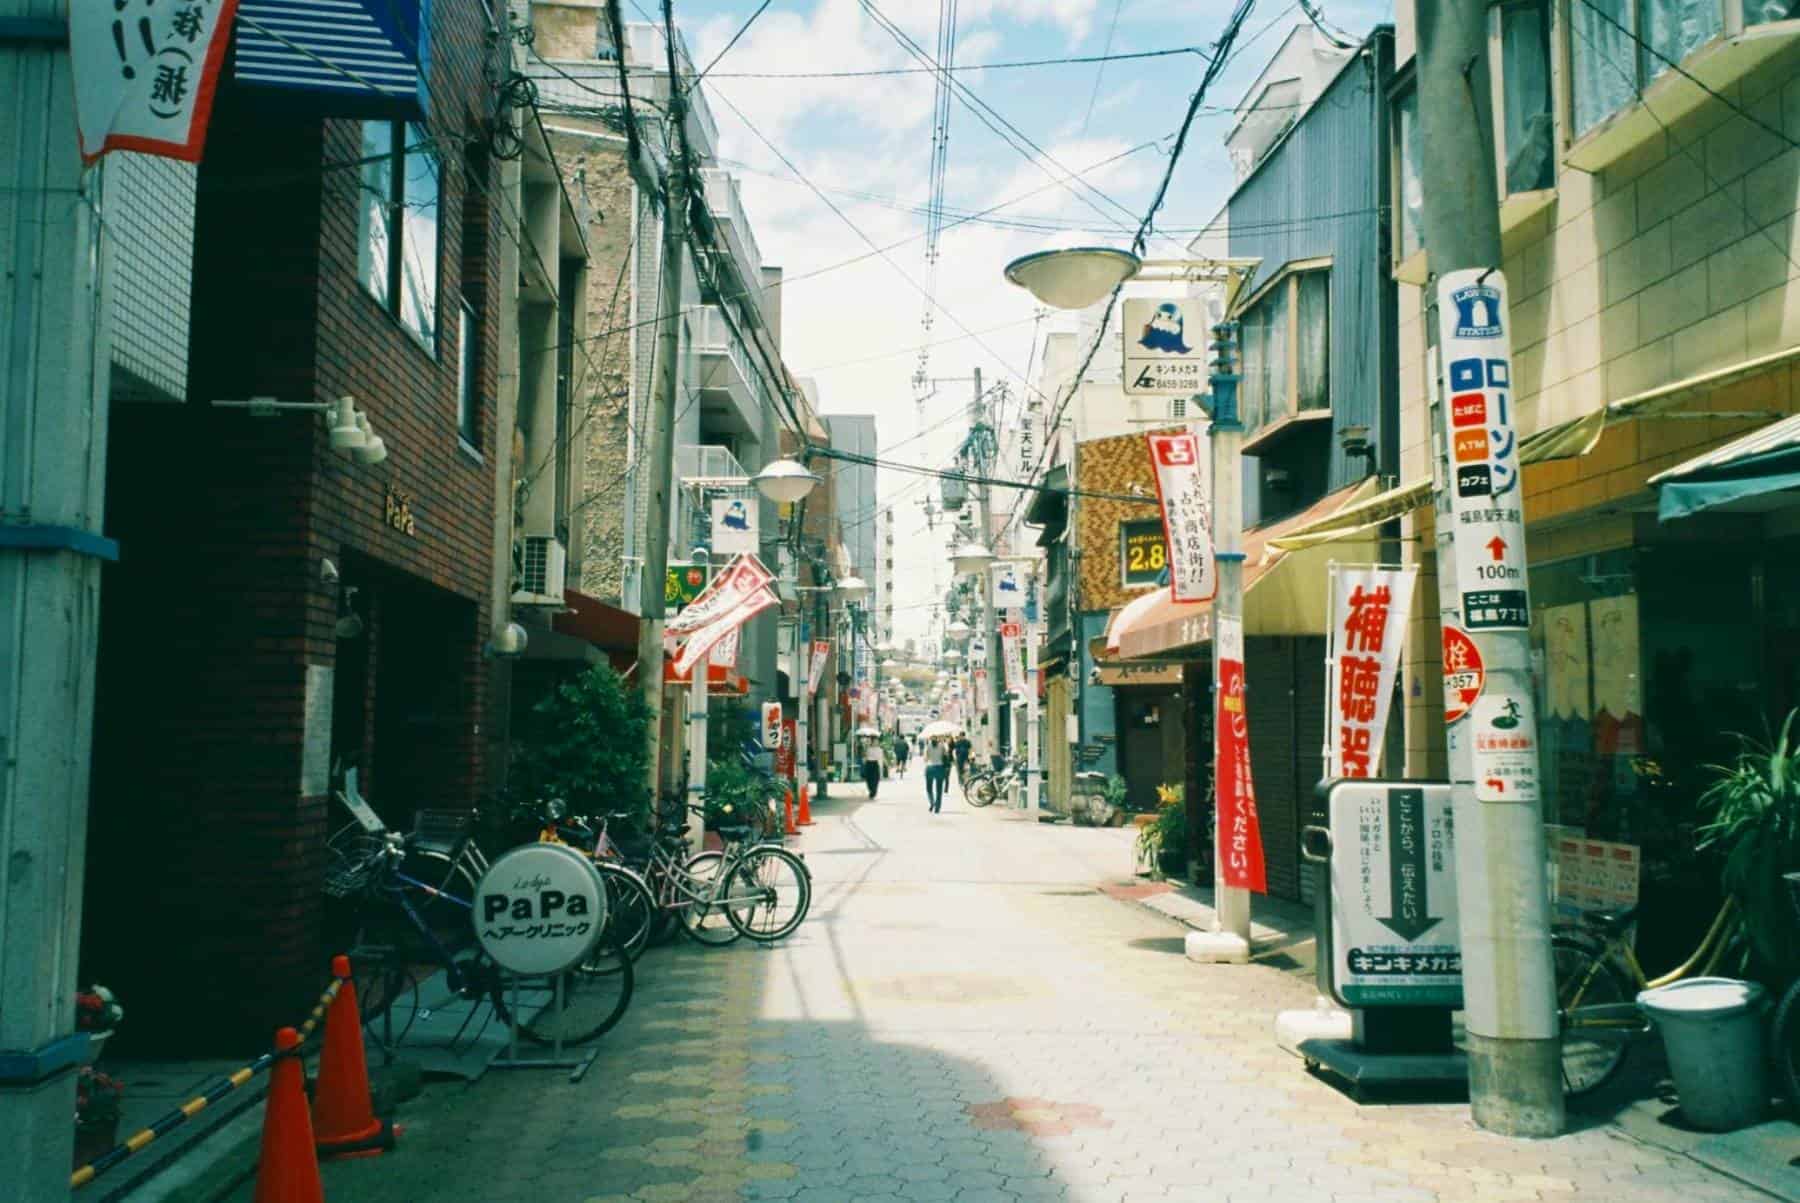 ナチュラクラシカを持って撮り歩く大阪 福島の町並み FUJIFILM C200